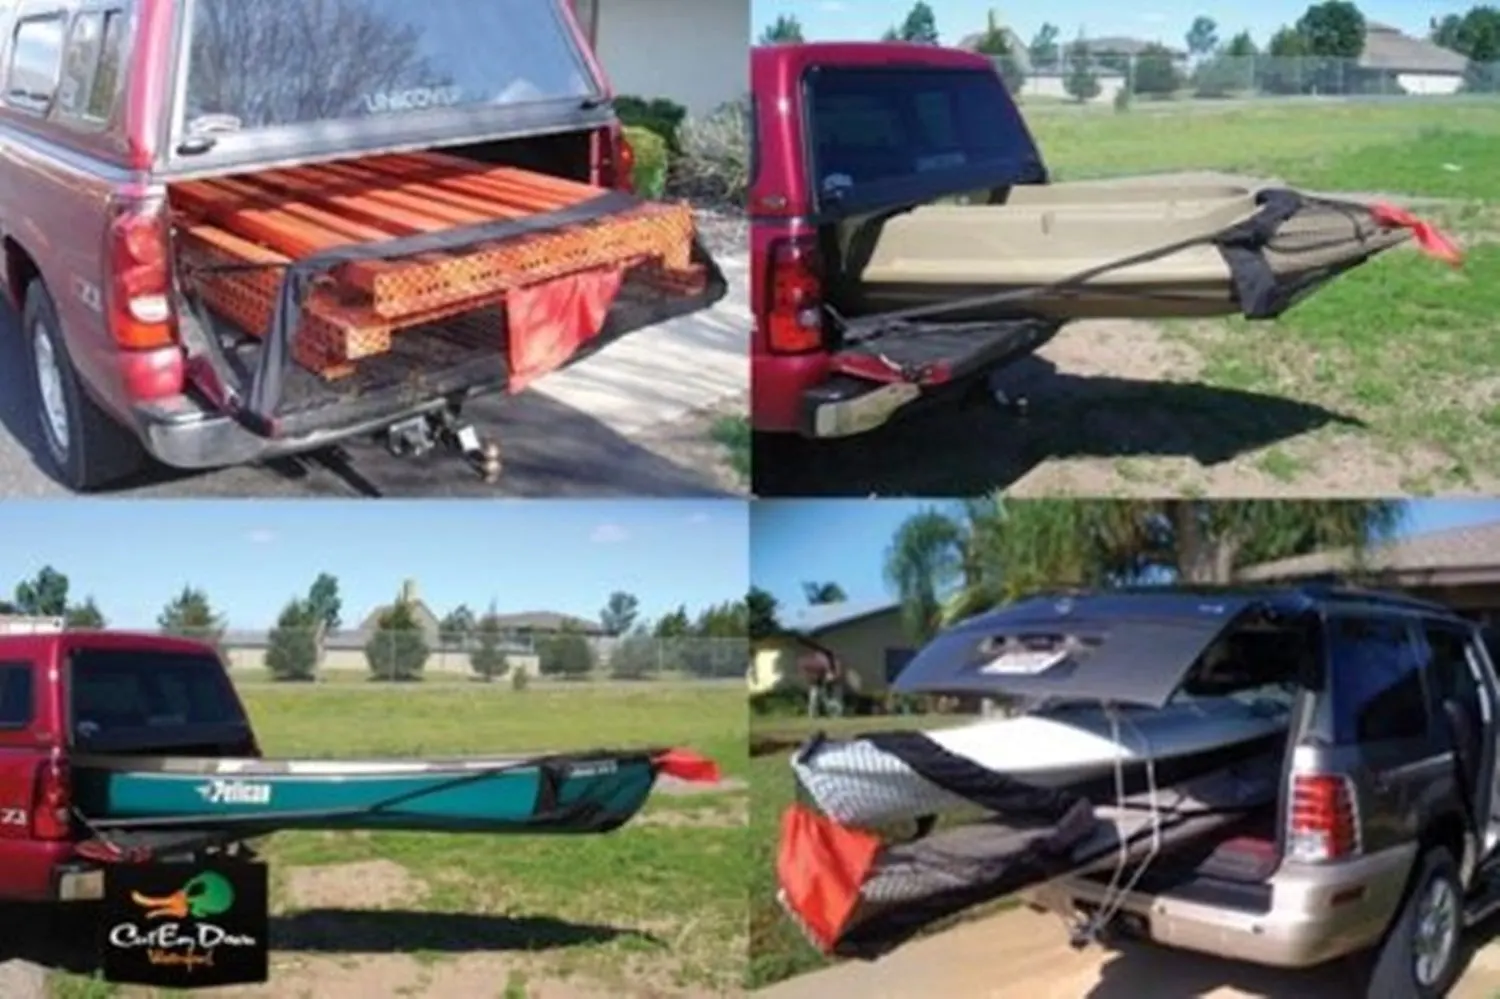 truck bed extender for kayak